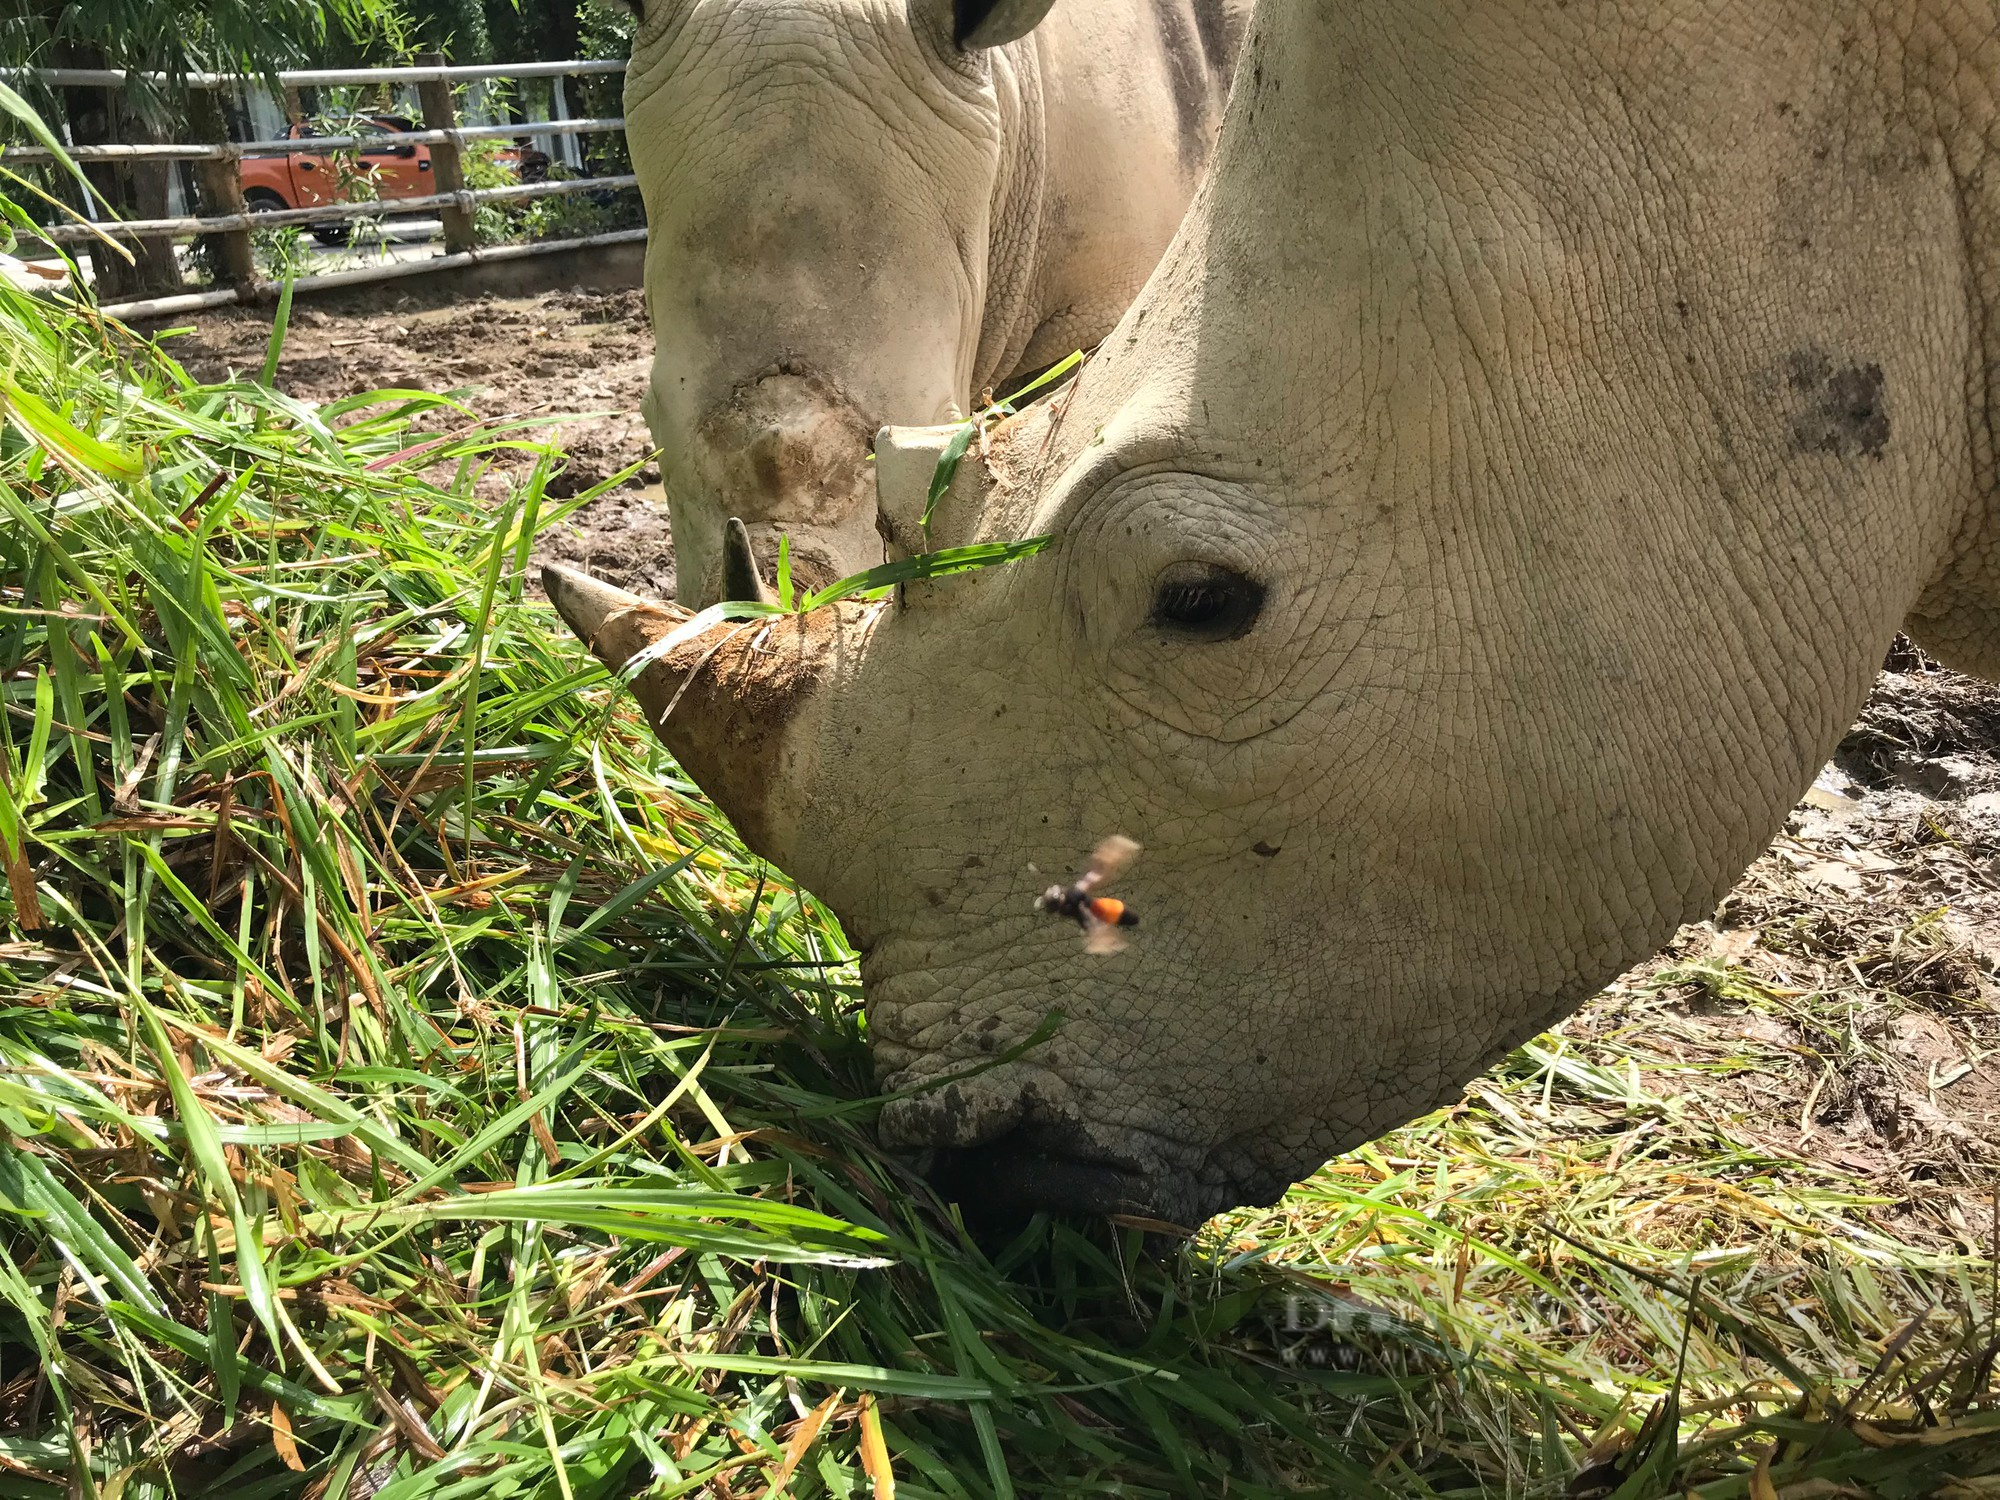 Cận cảnh cuộc sống của những chú tê giác 2 sừng đang được nuôi tại Nghệ An - Ảnh 8.